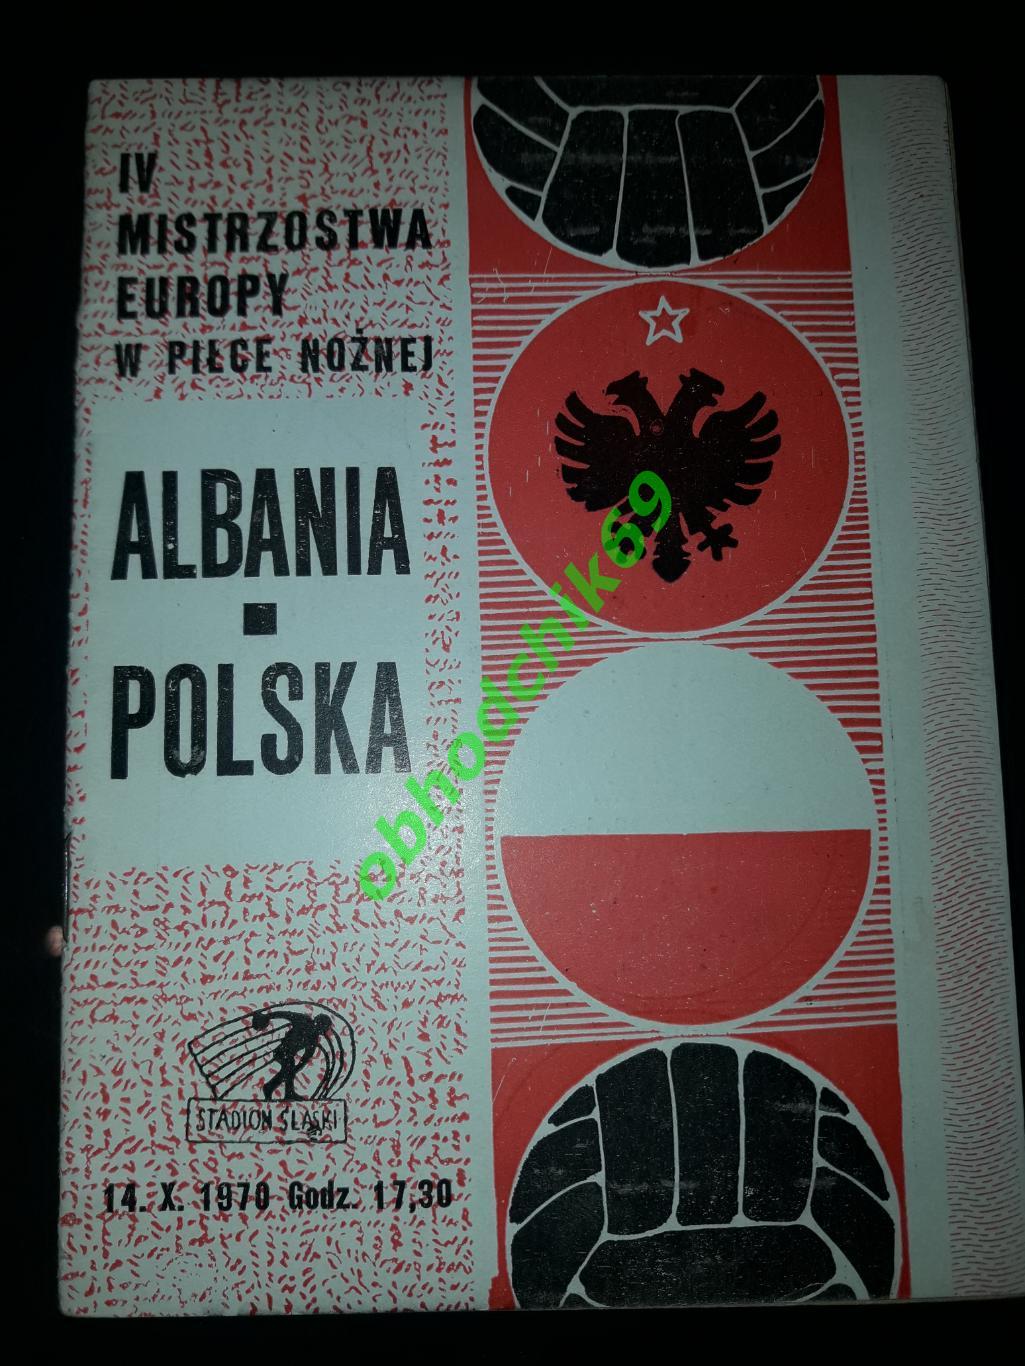 Польша - Албания_ сборная 14 10 1970 отборочный Чемпионата Европы 1972